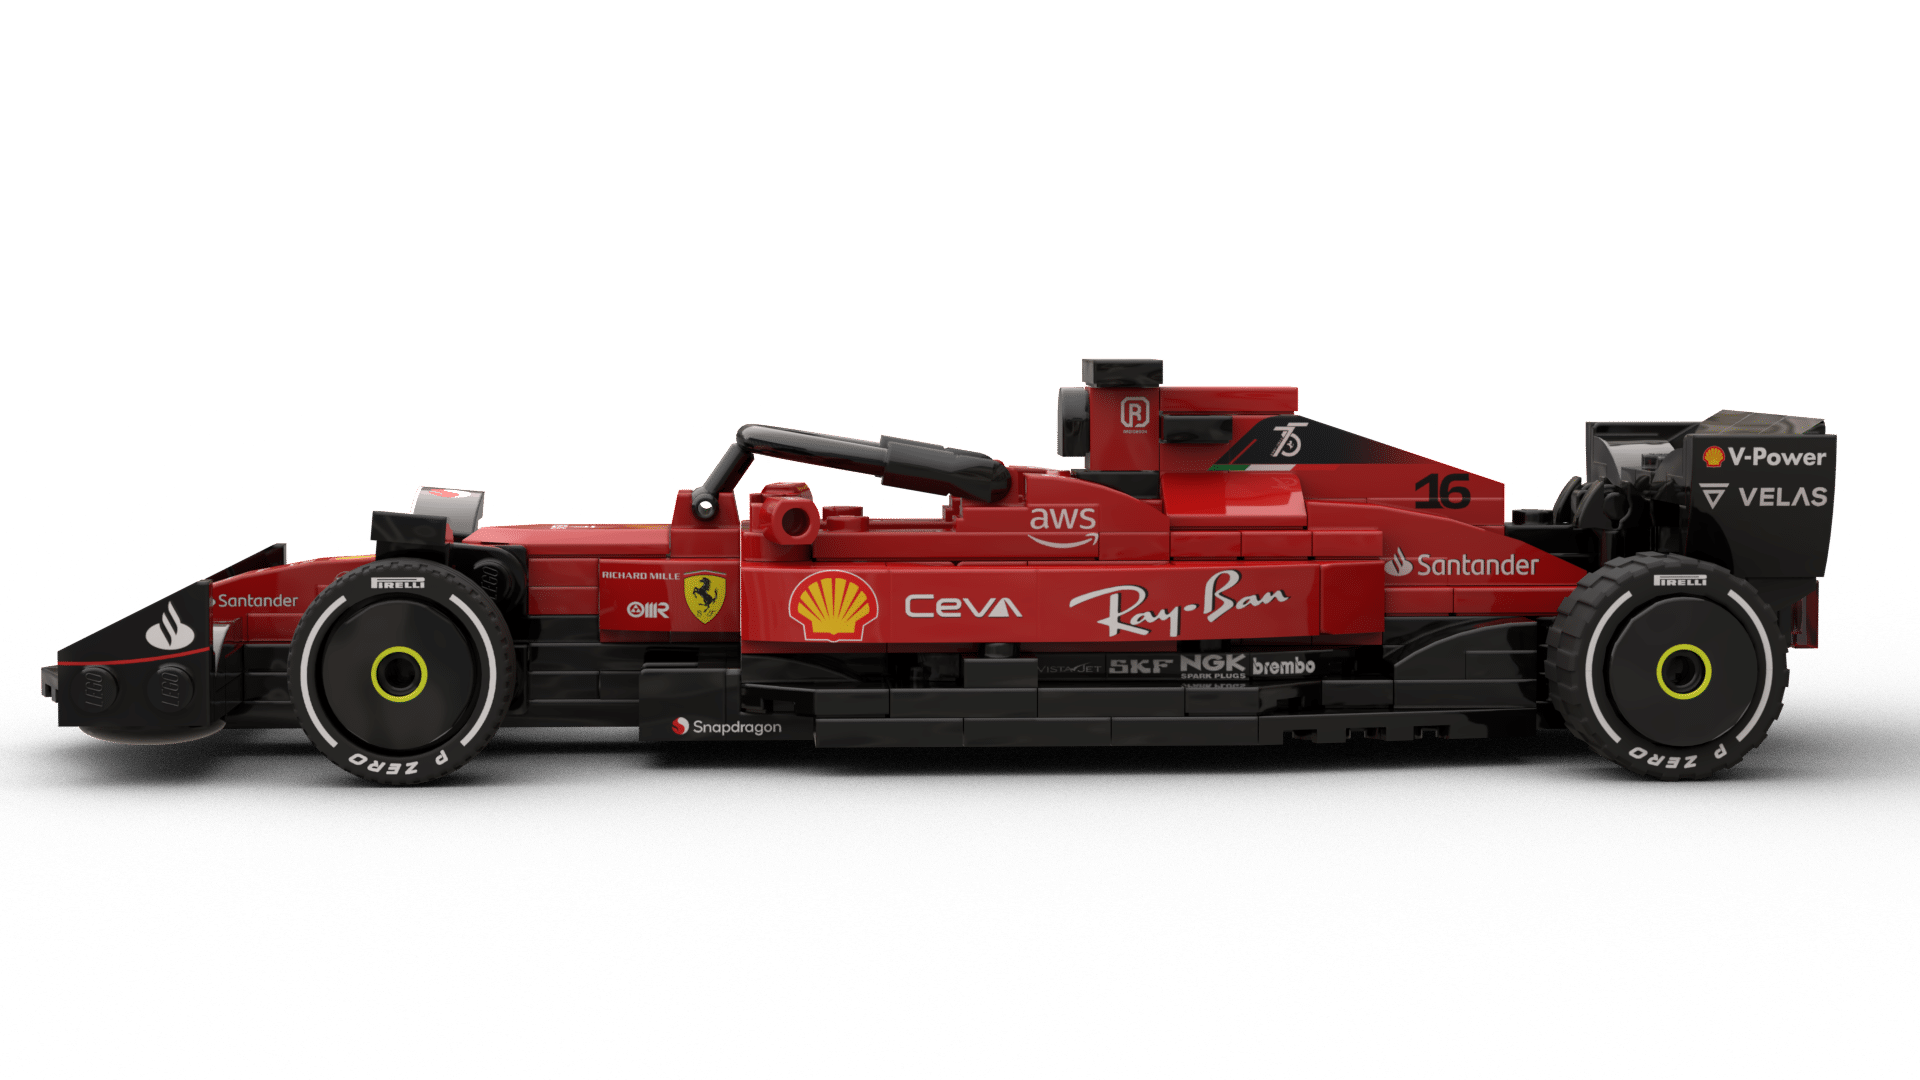 LEGO MOC F1 Ferrari F1-75 - Monza by LegoCG